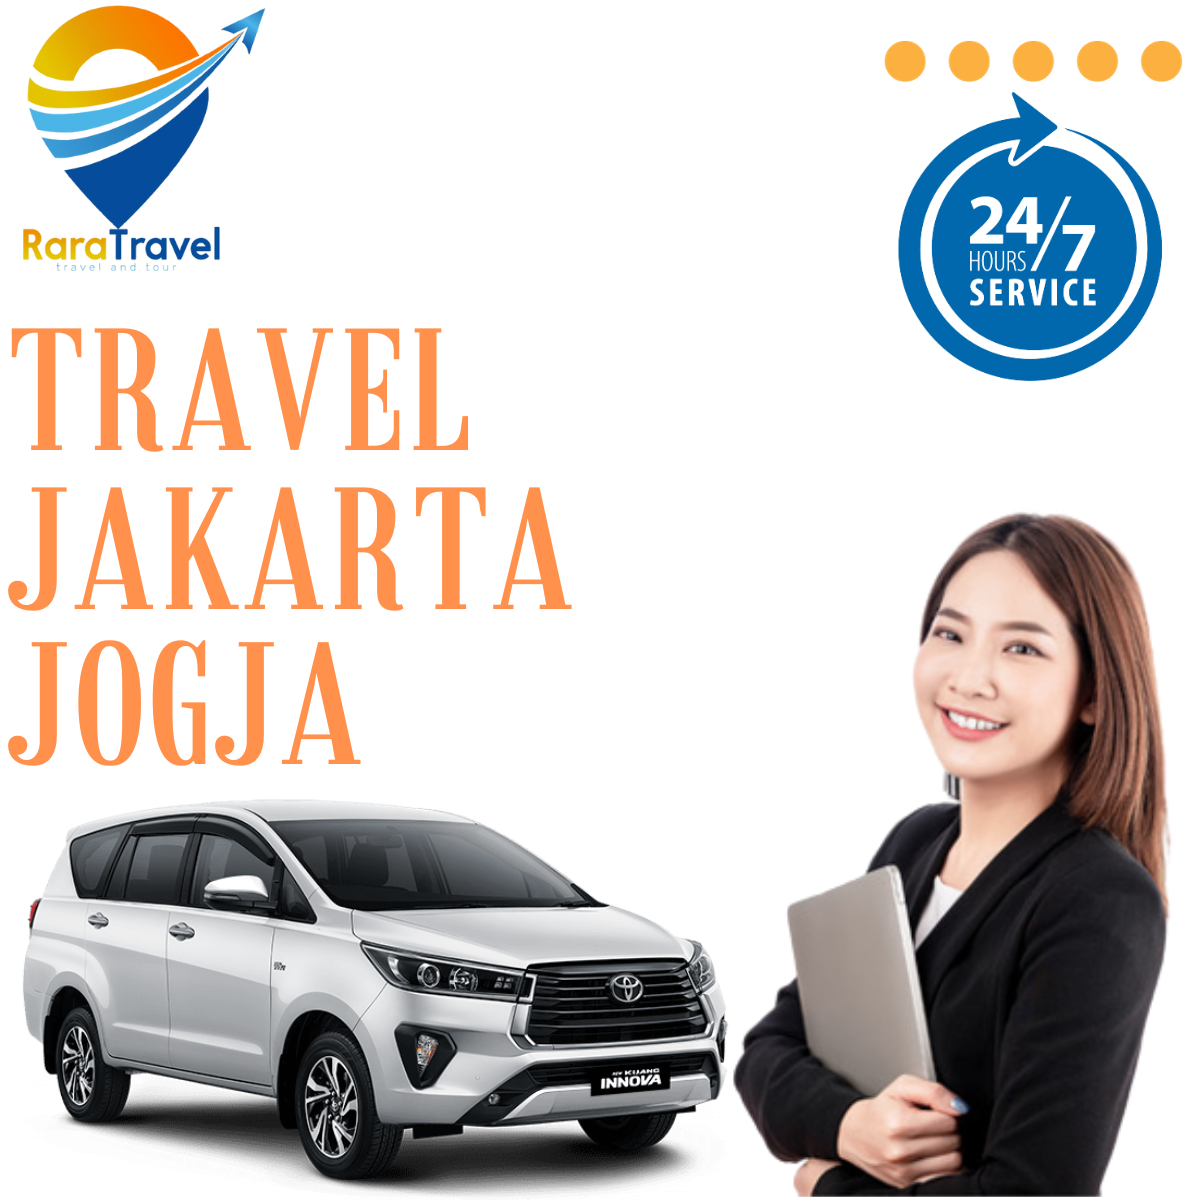 Travel Jakarta Jogja via TOLL Hiace Harga Tiket Murah